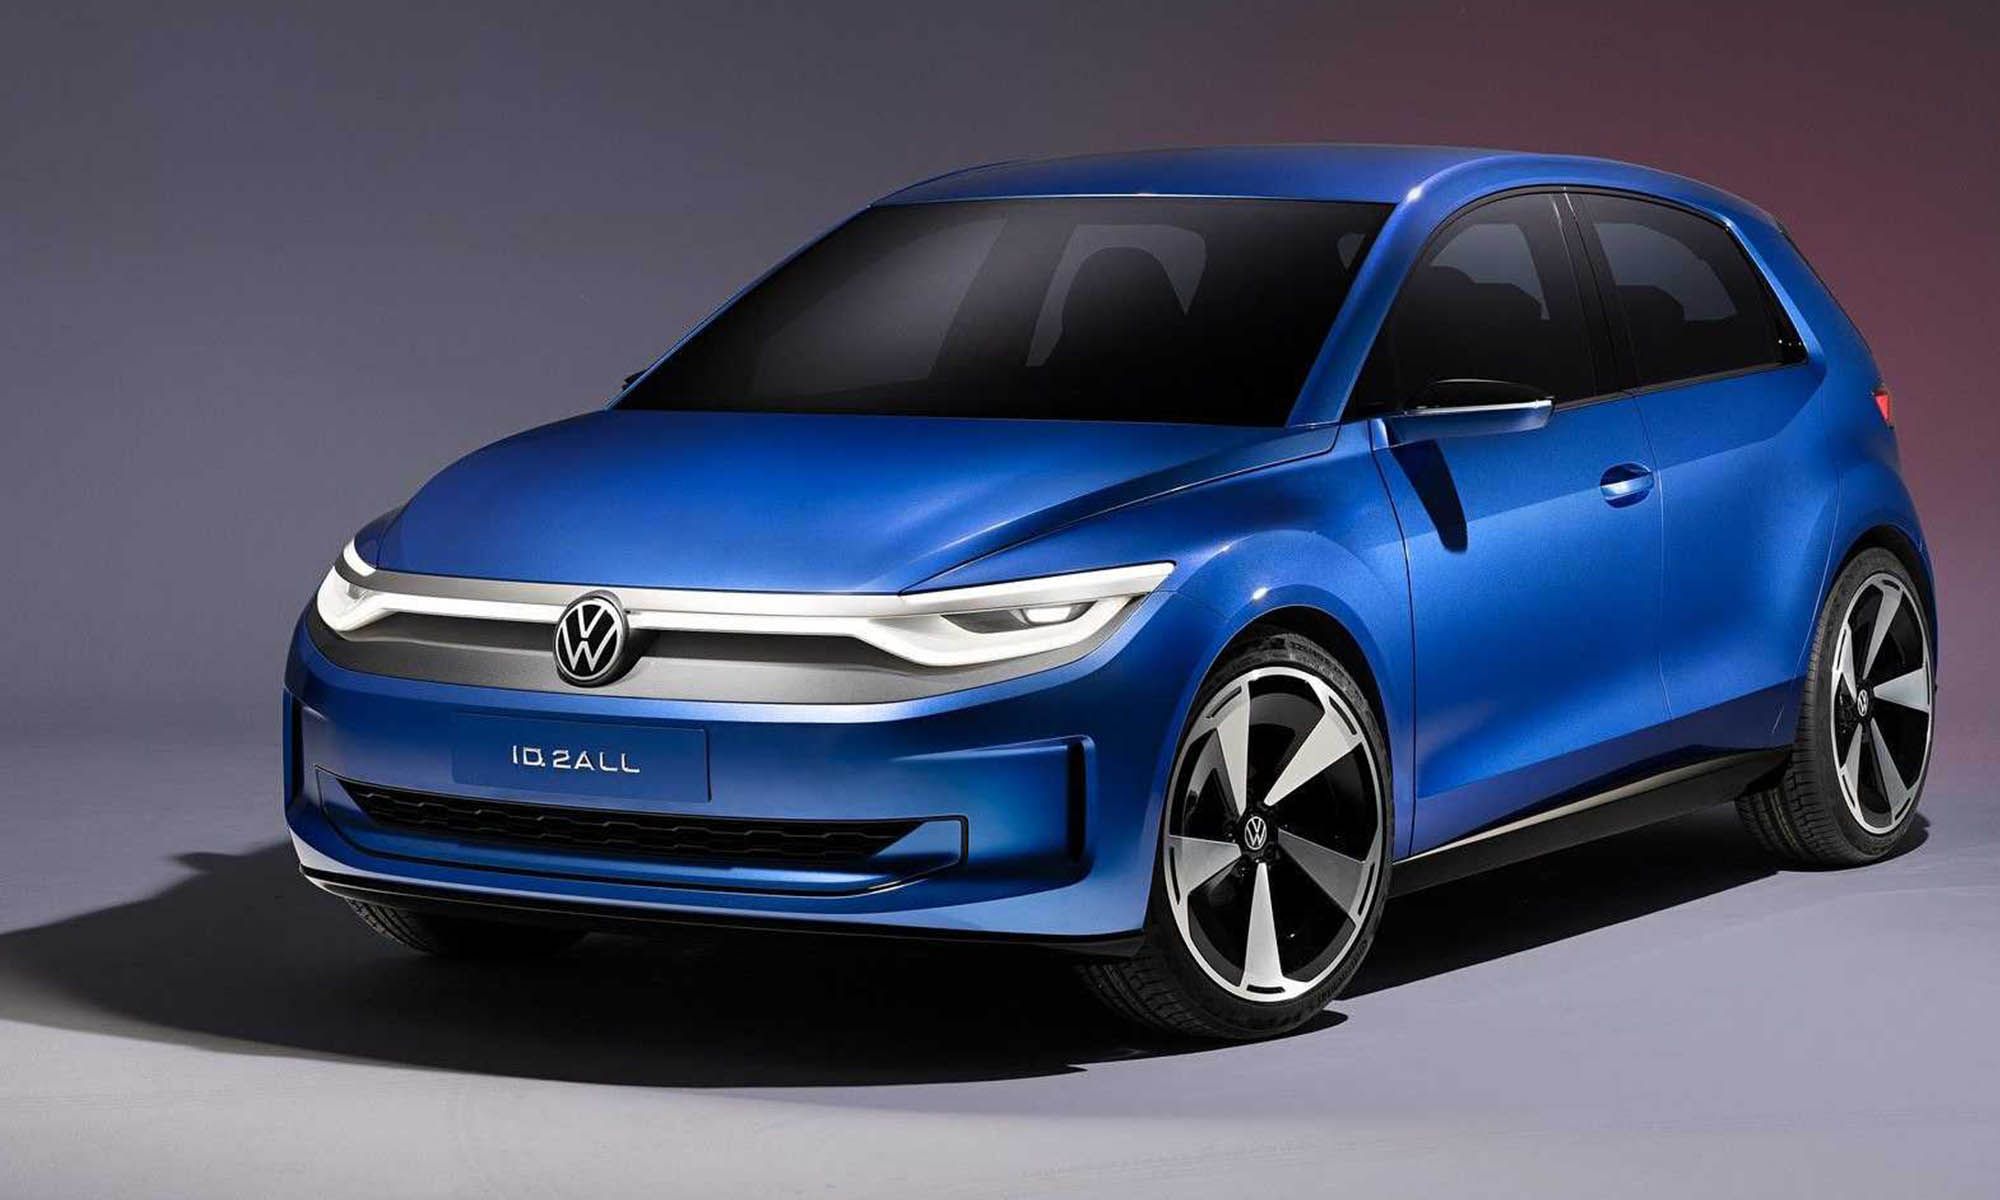 El modelo de producción que salga del Volkswagen ID. 2all (imagen) se fabricará en Navarra.